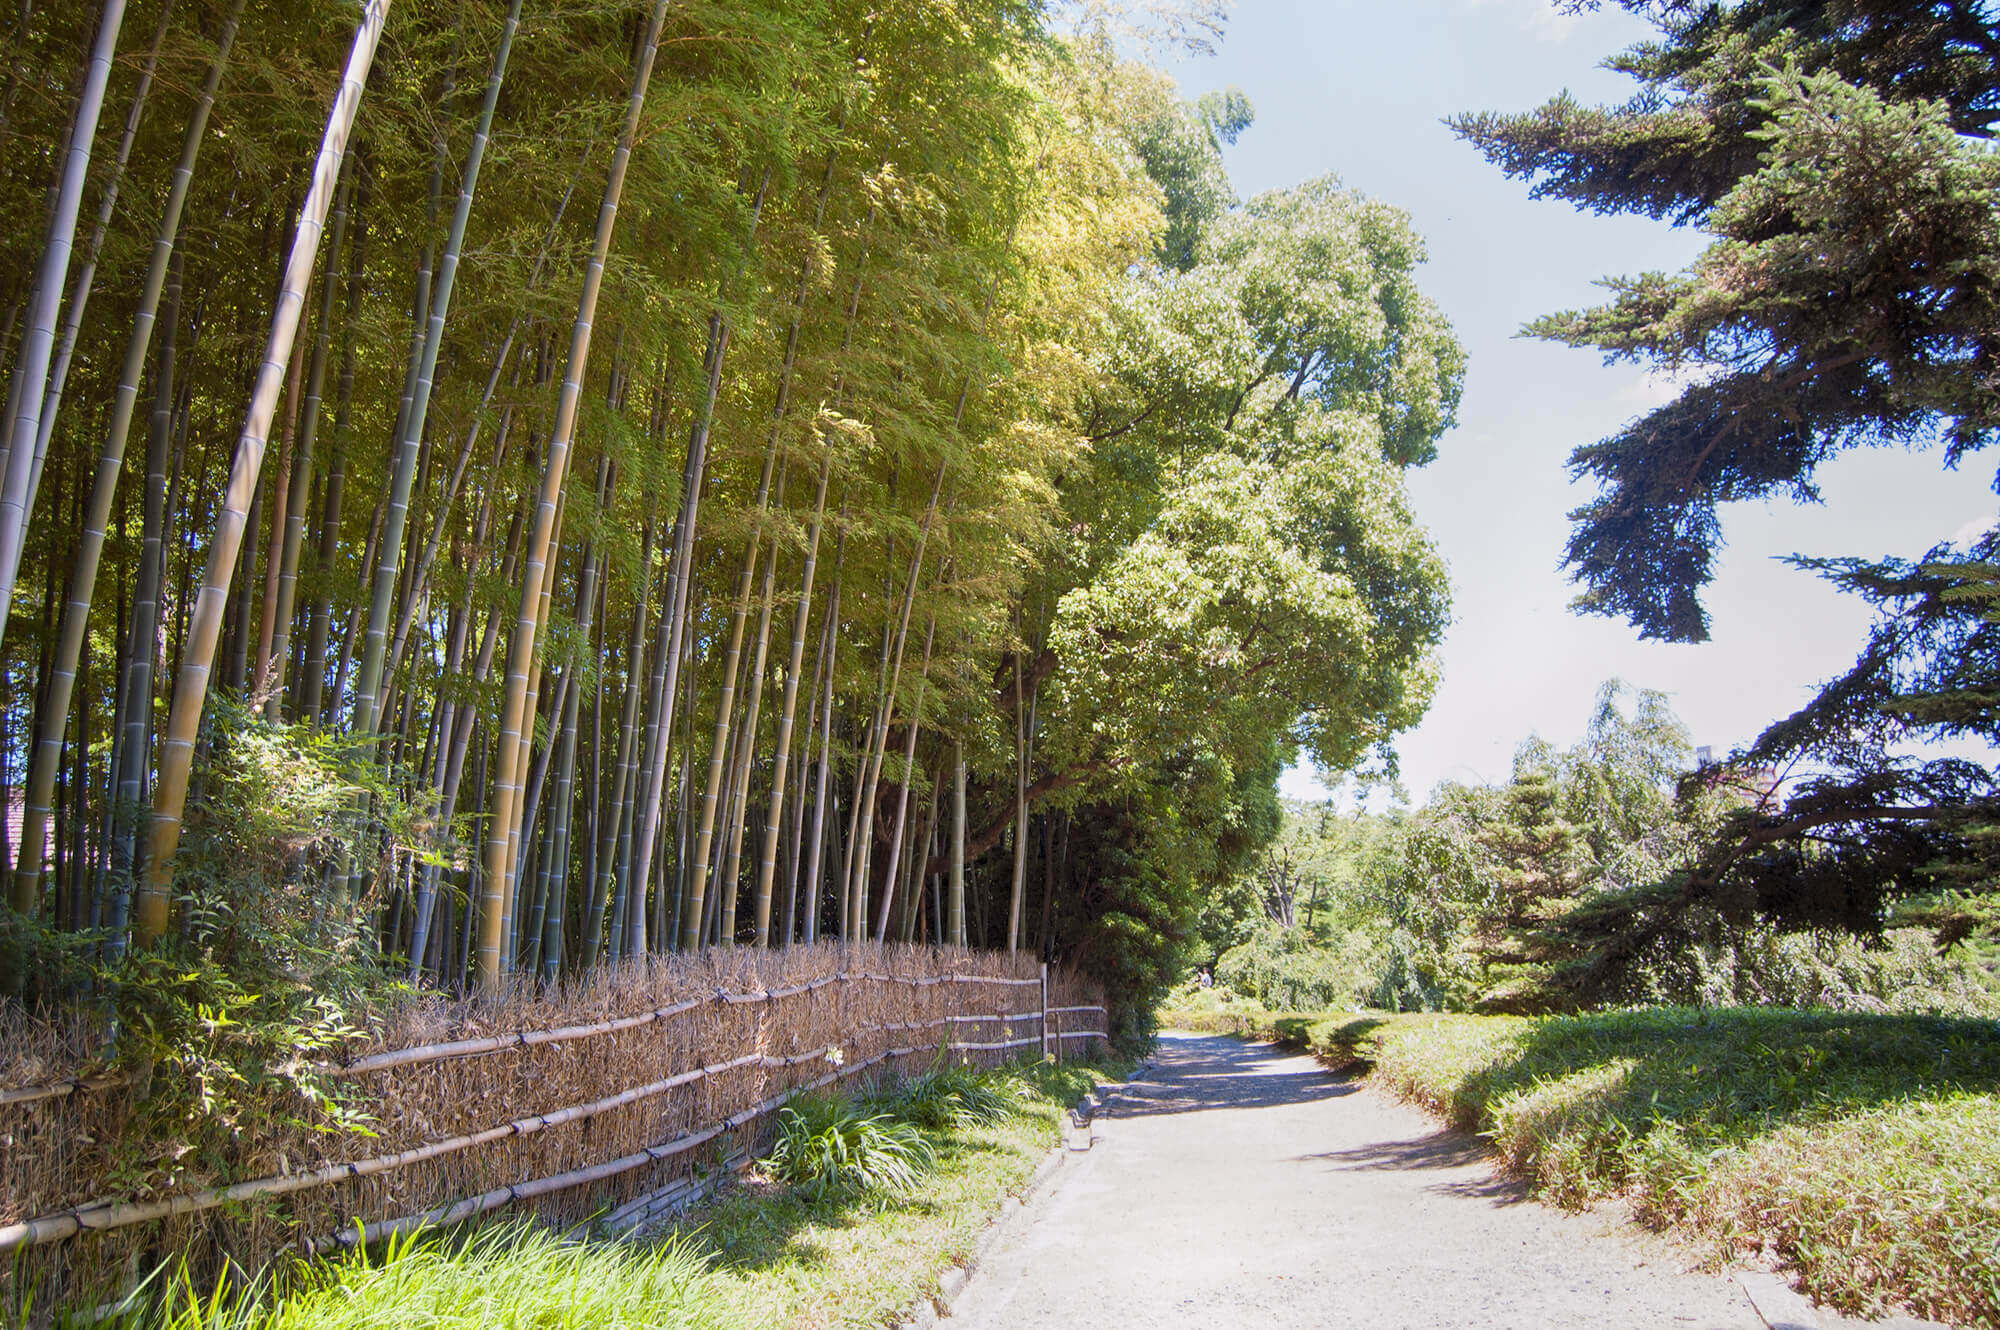 Bambu forest in Shirotori Garden